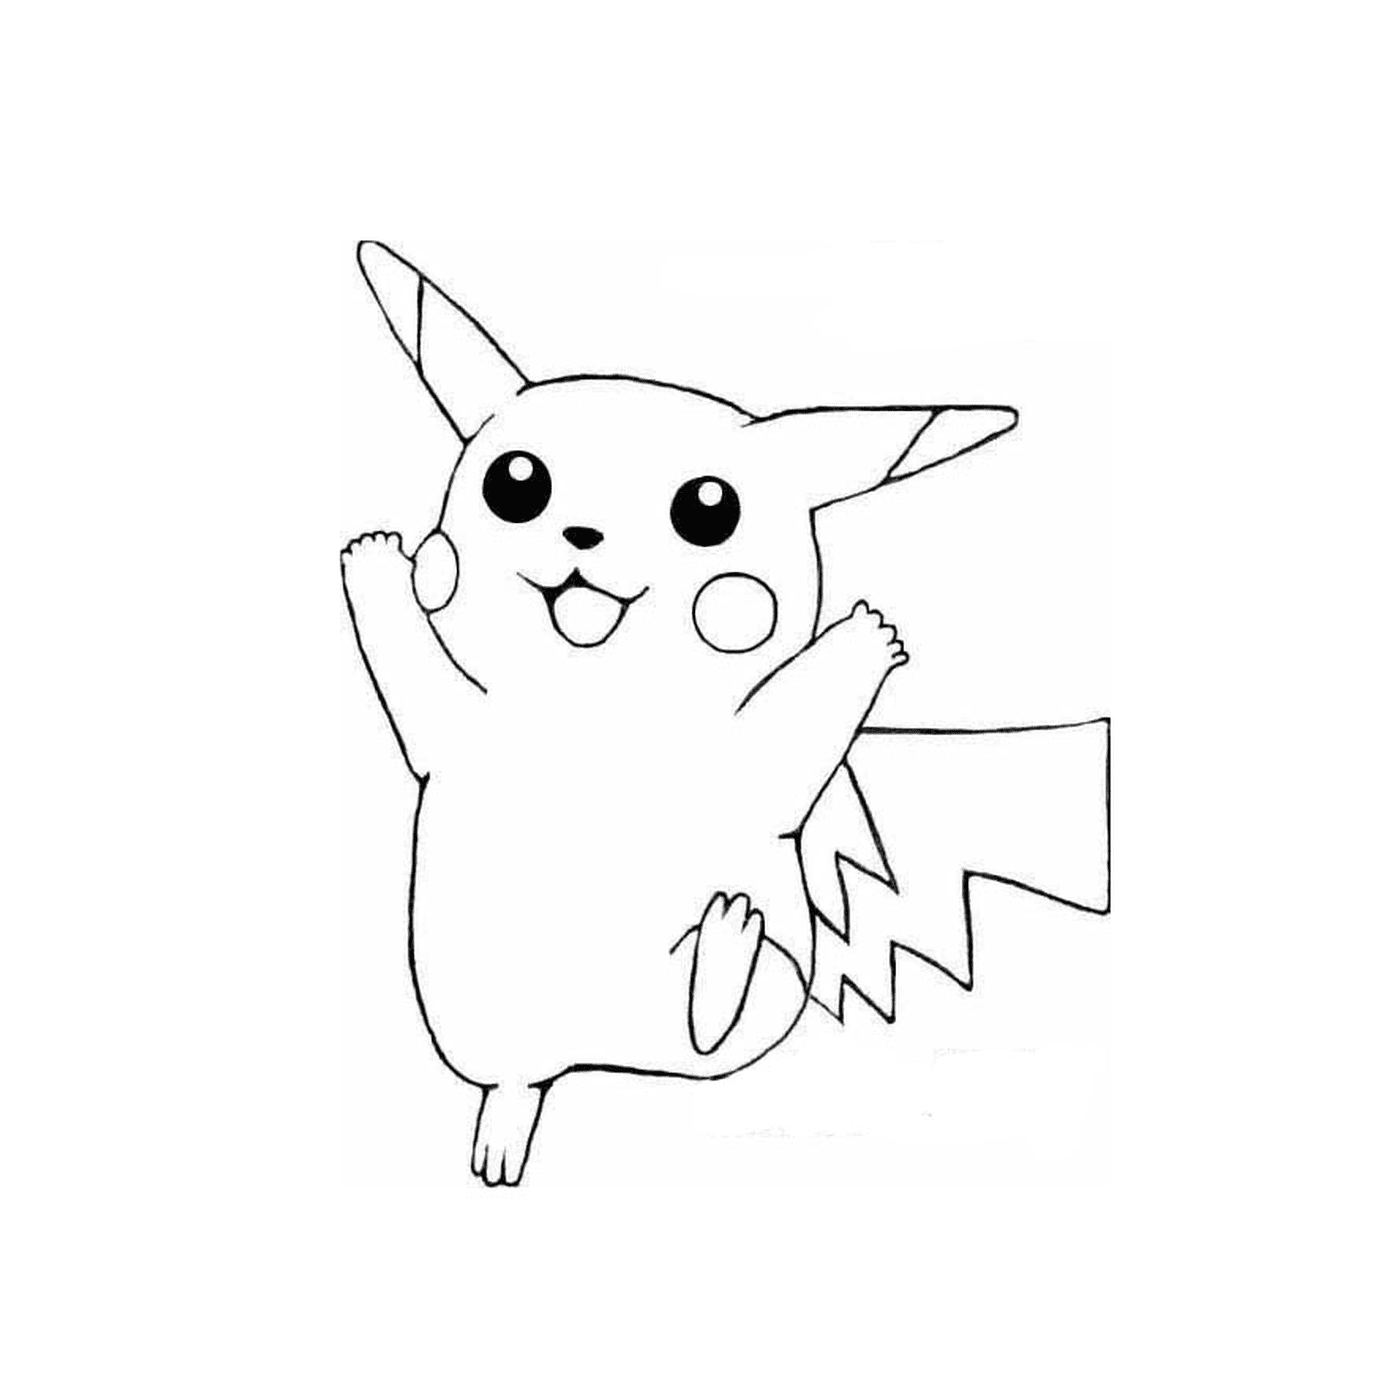  Ein Pikachu 